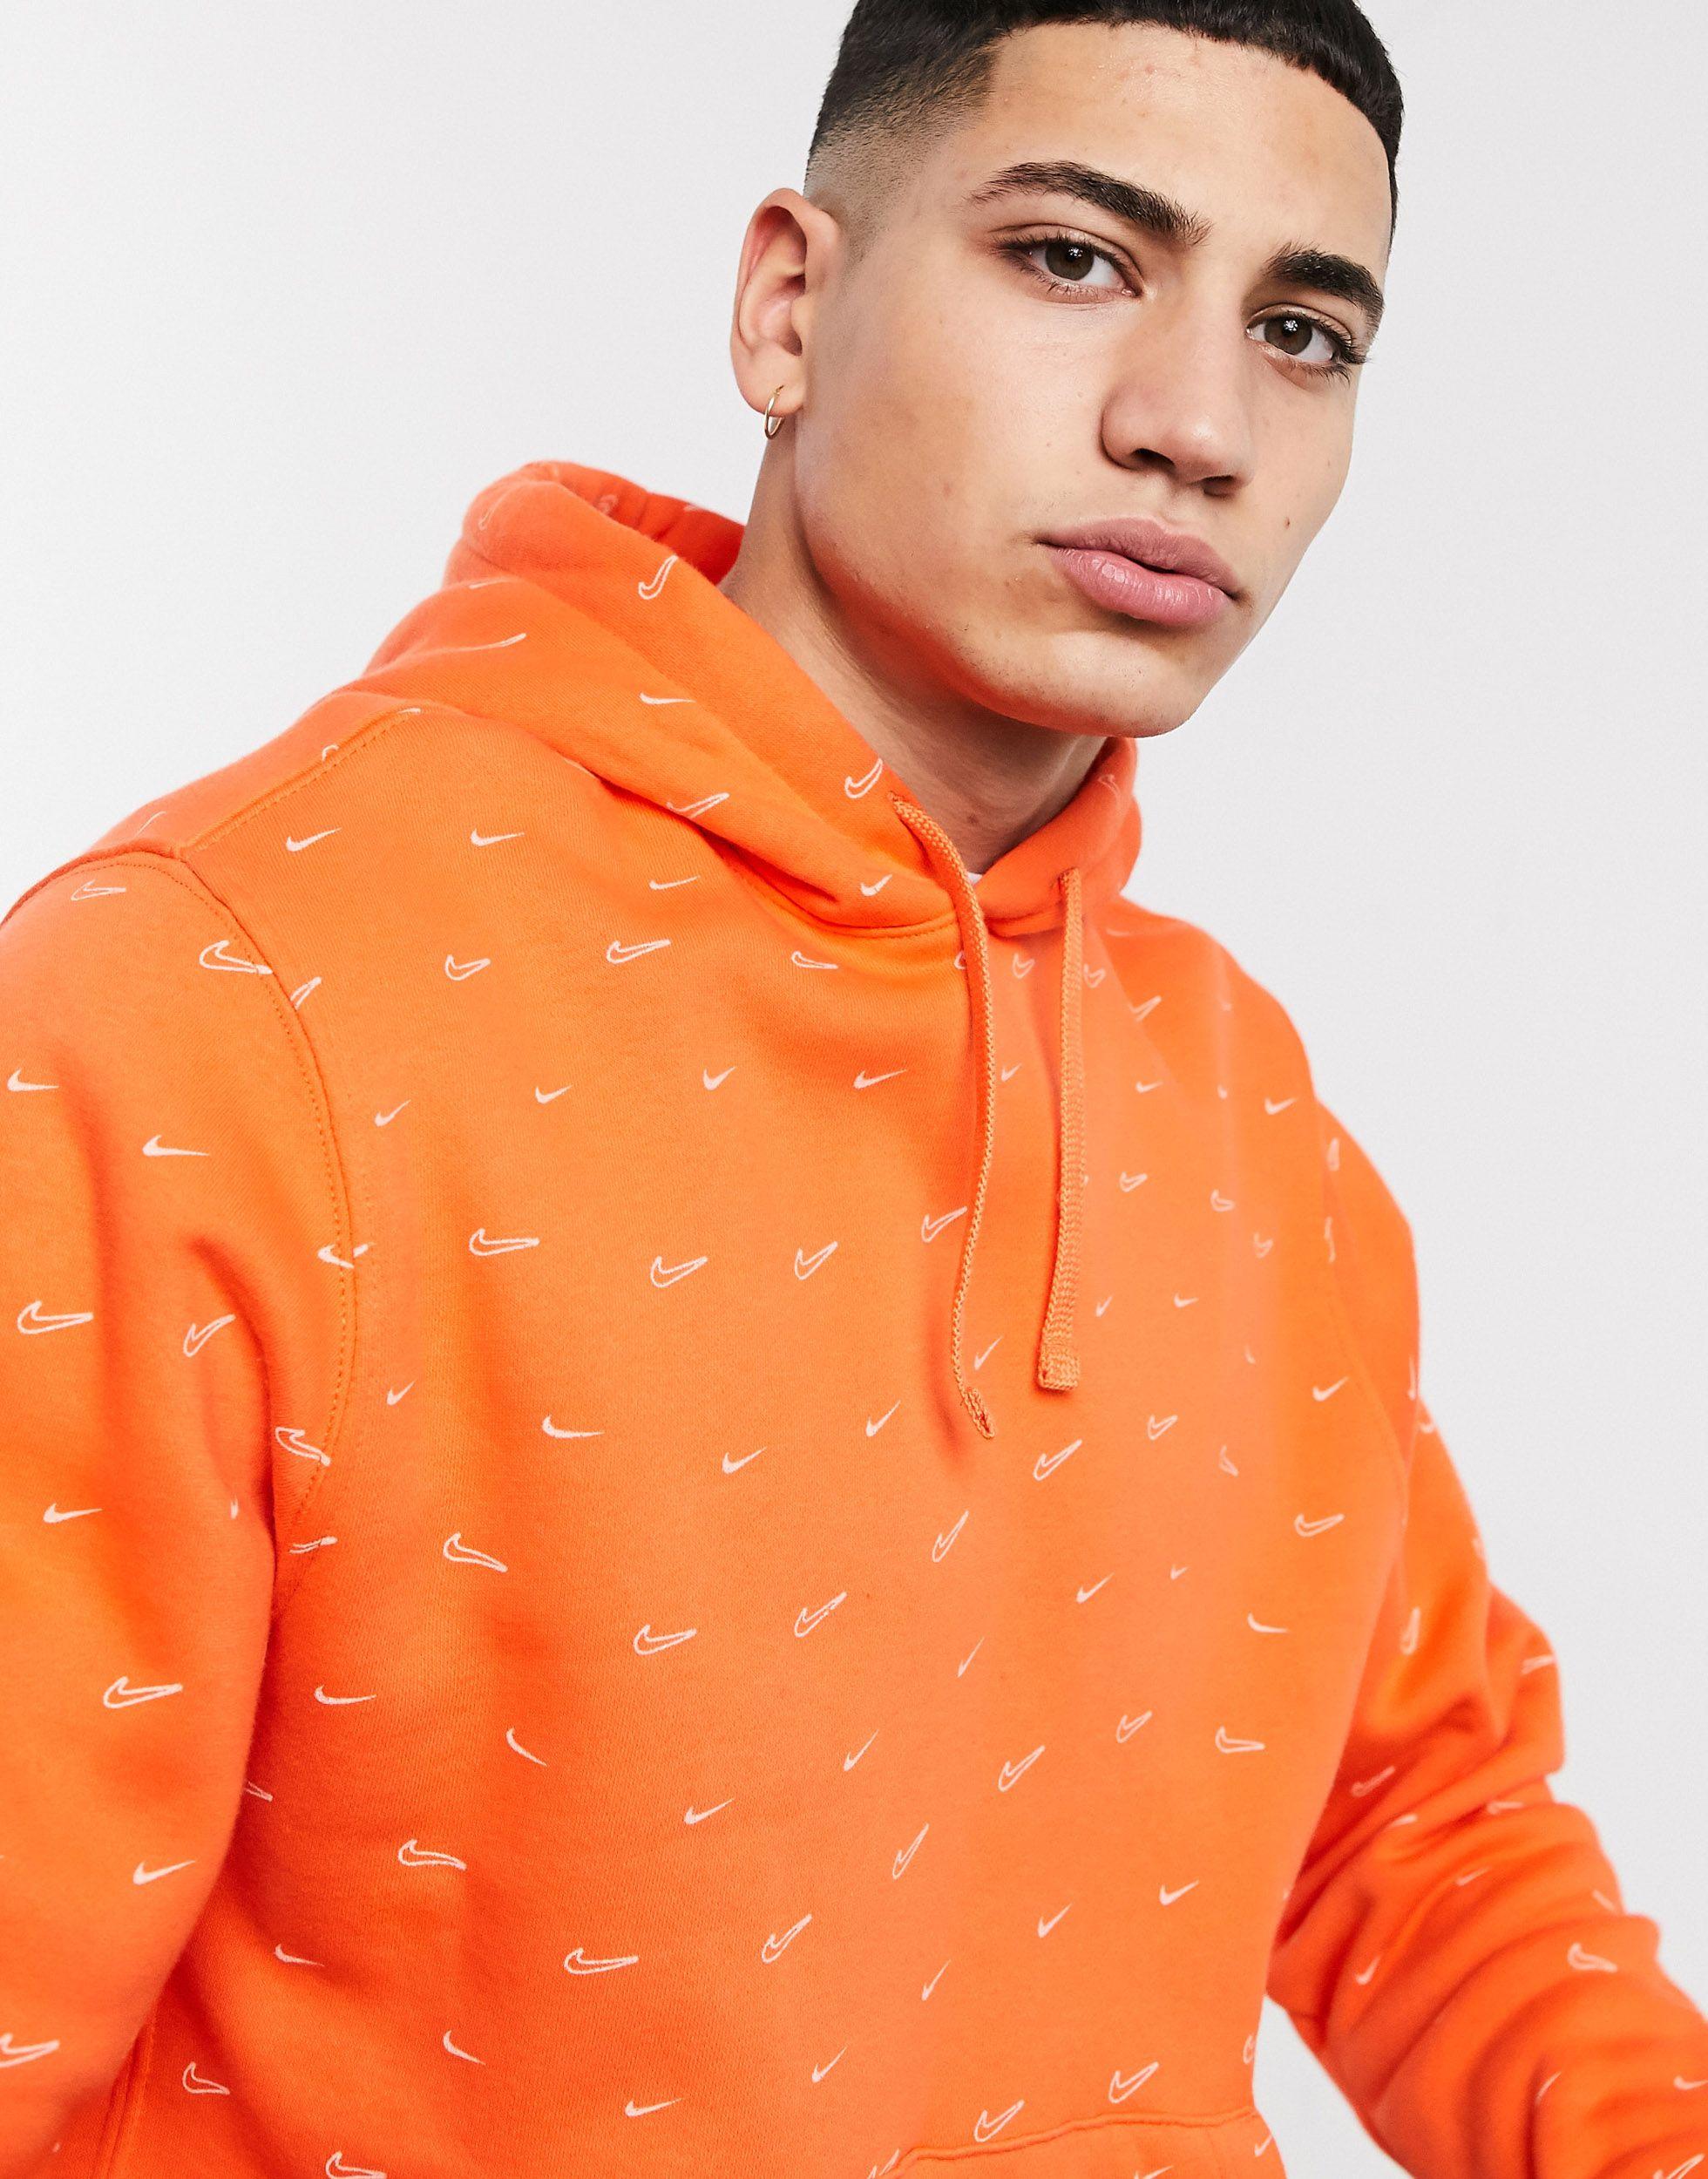 vererek tilki nınnin nike international hoodie orange australia litre  İddialar Aşılama